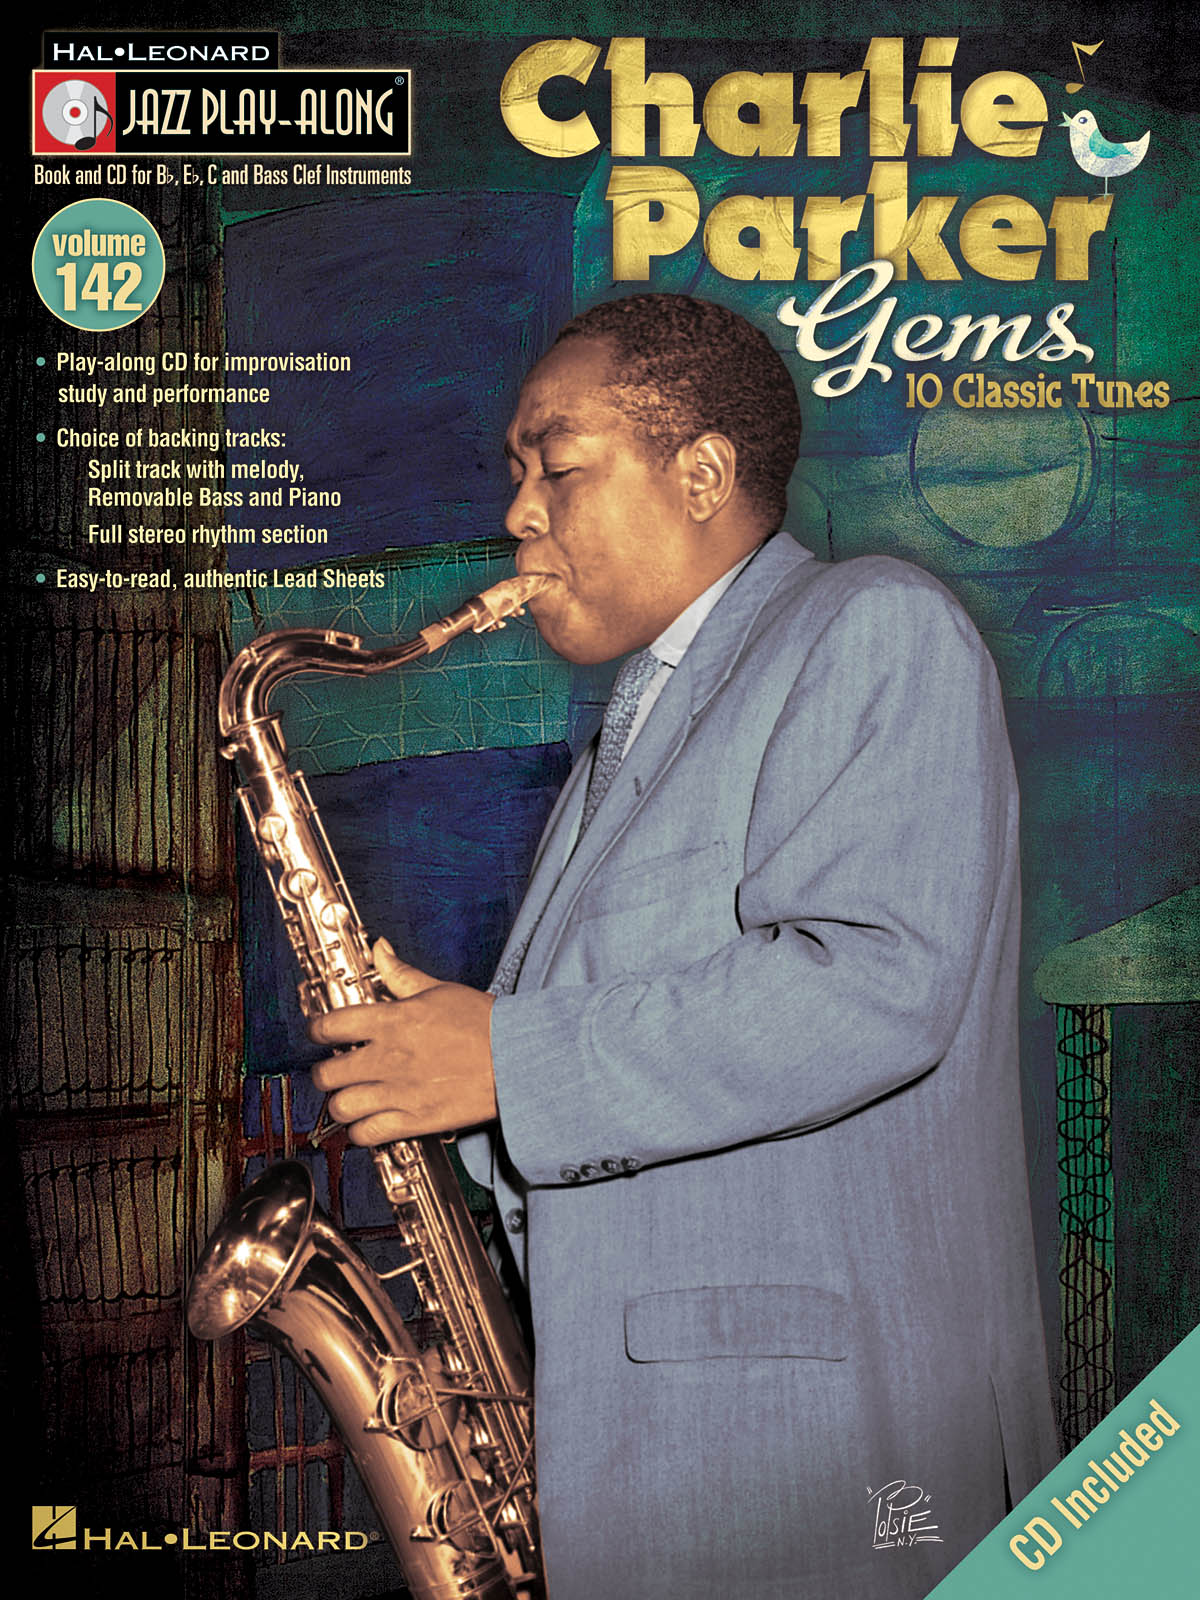 Charlie Parker Gems  - Jazz Play-Along Volume 142 - melodie s akordy pro nástroje v ladění C